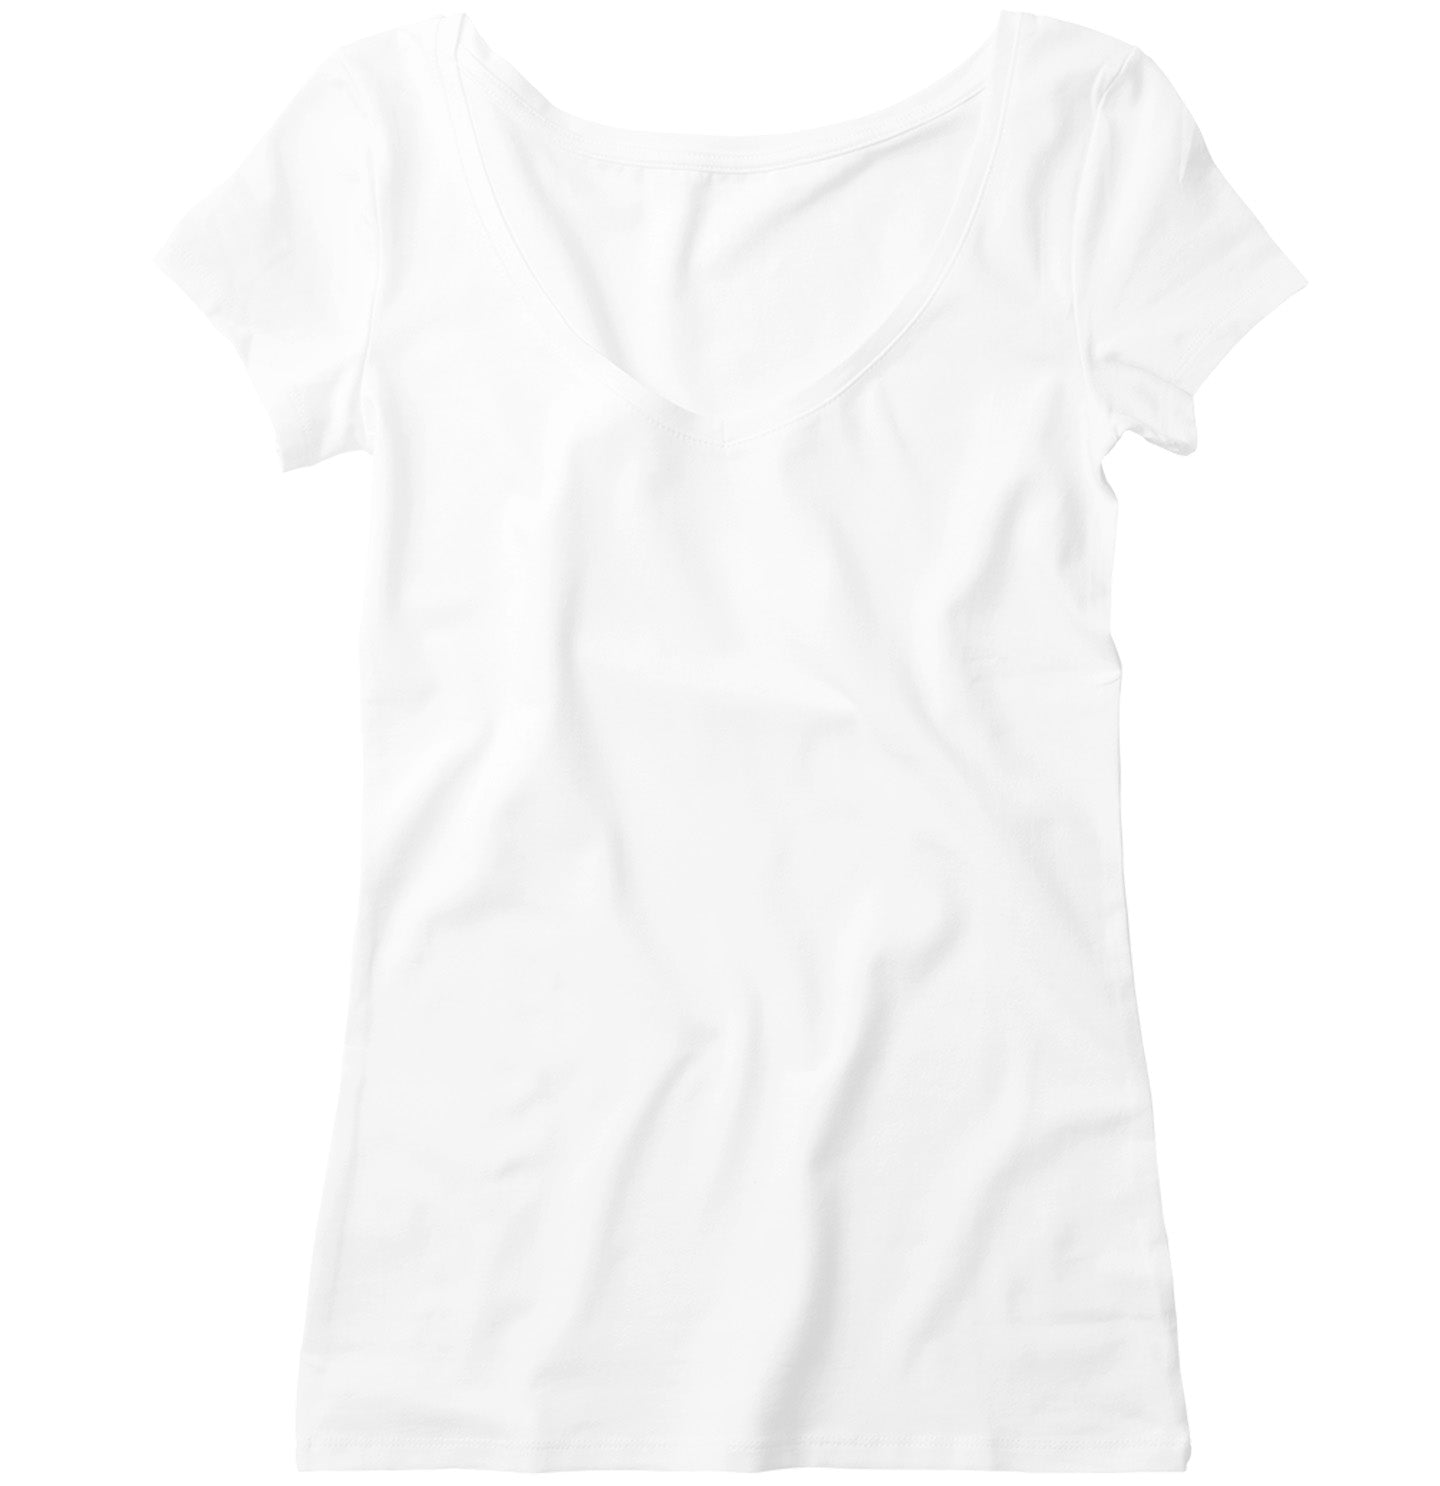 My Dachshund Is My Valentine - Personalized Custom Women's V-Neck T-Shirt